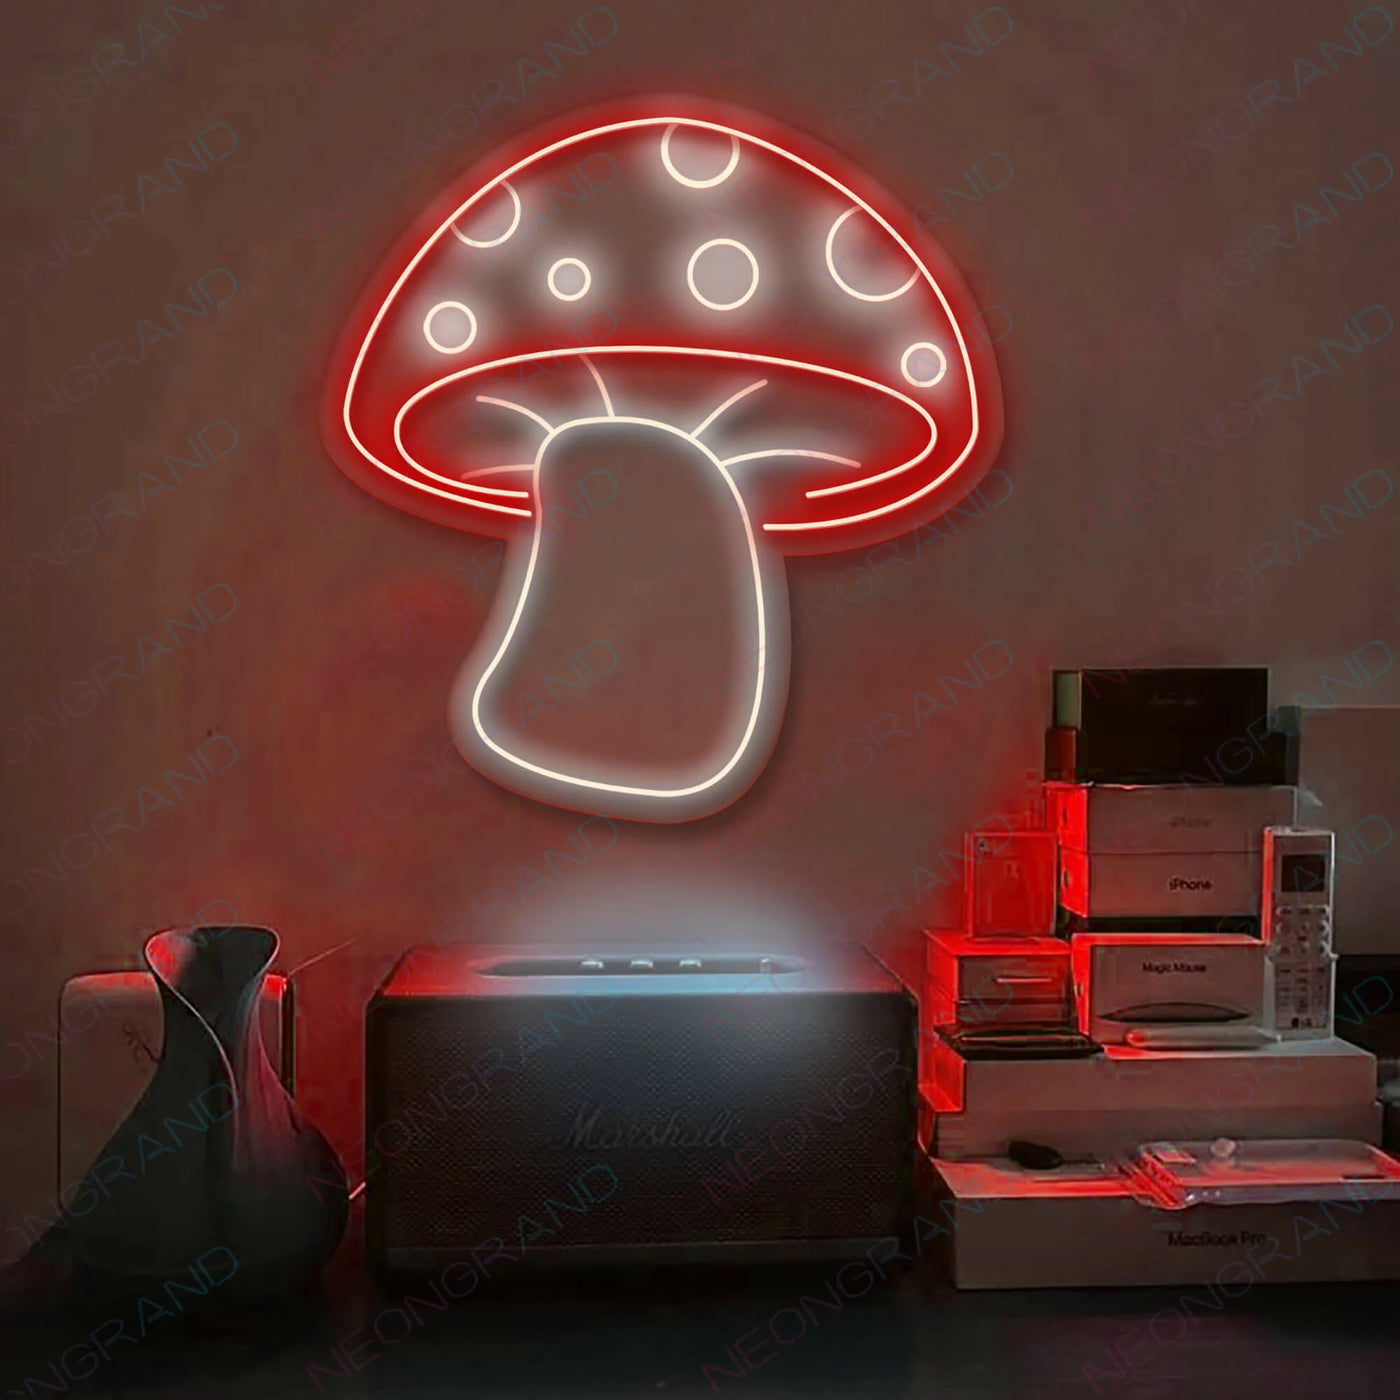 Aesthetic Mushroom Neon Sign Led Light Red